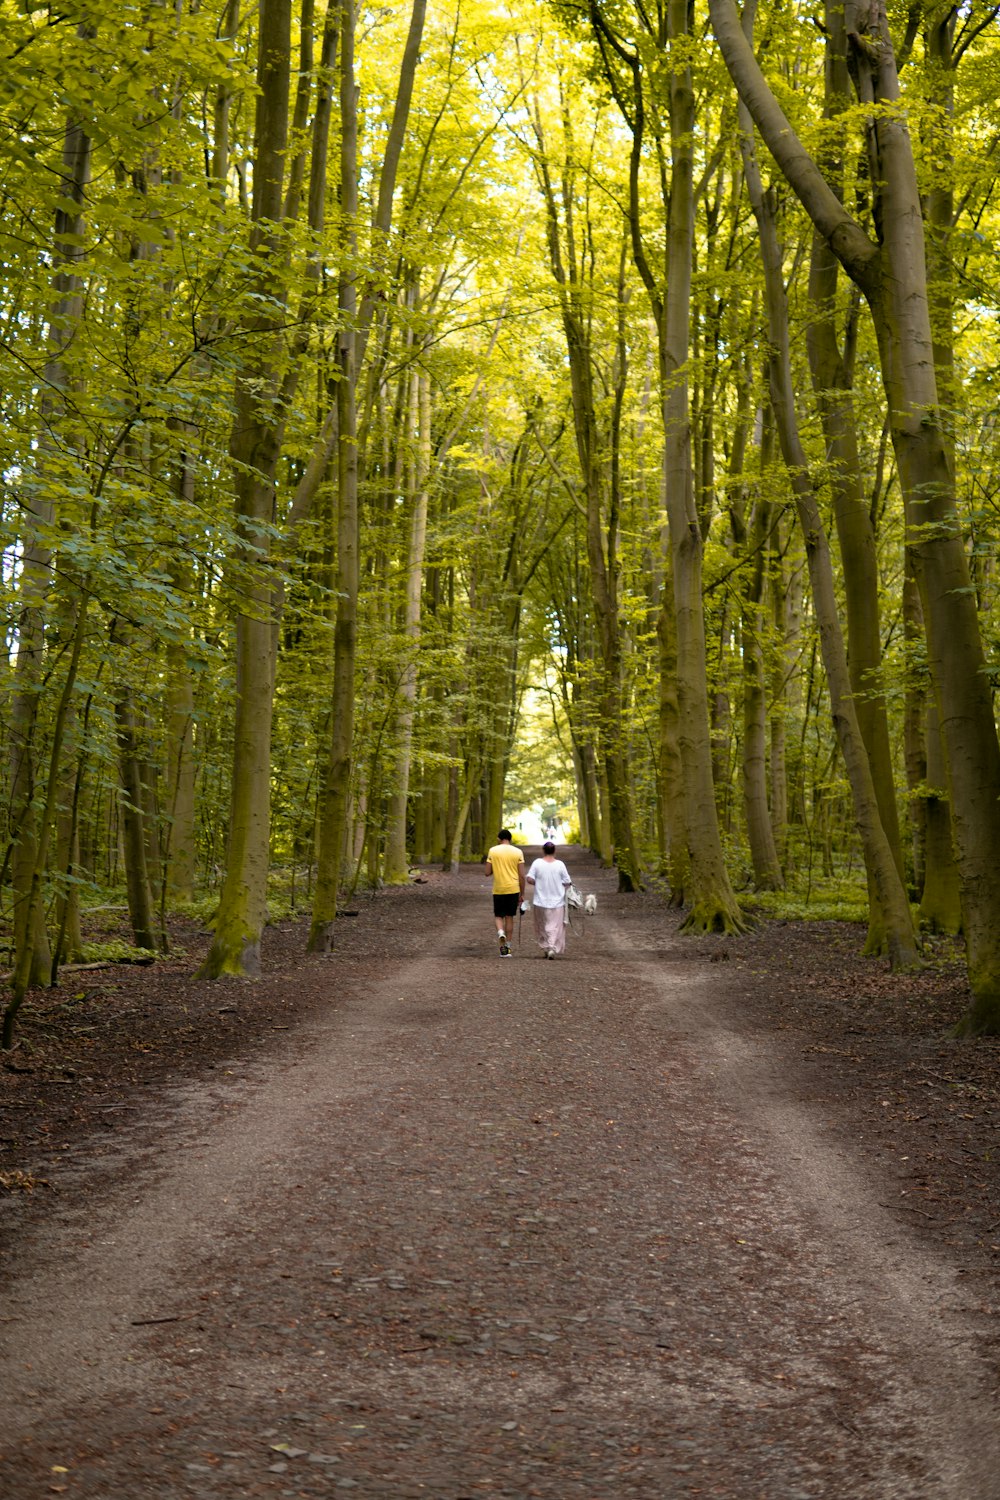 Mujer en chaqueta blanca y pantalones negros caminando por el camino entre árboles verdes durante el día